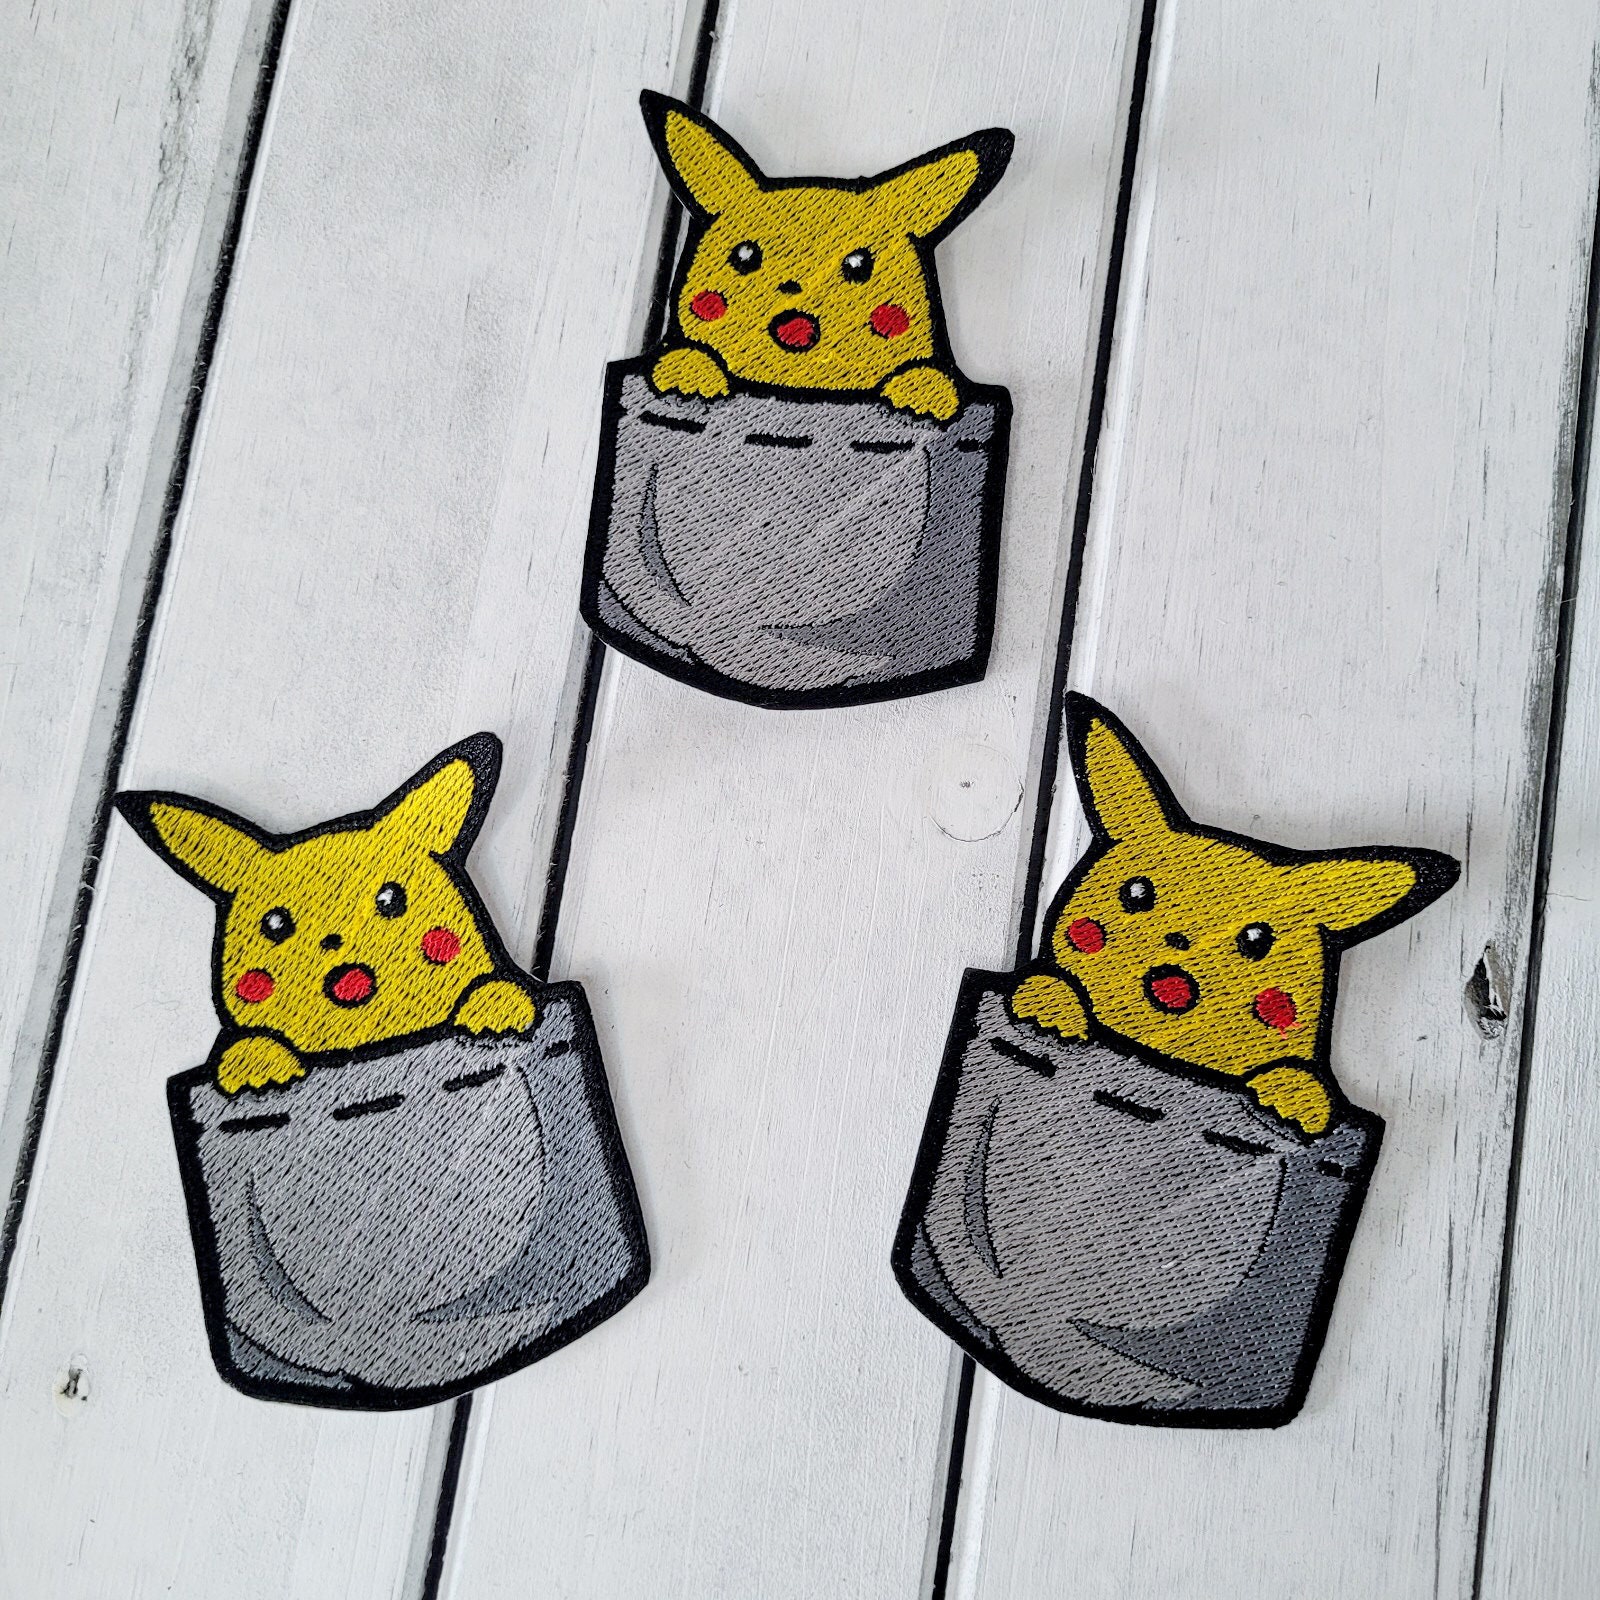 Pikachu Pokemon Iron-On Patch 3 x 2.25 1 Piece – Target Trim